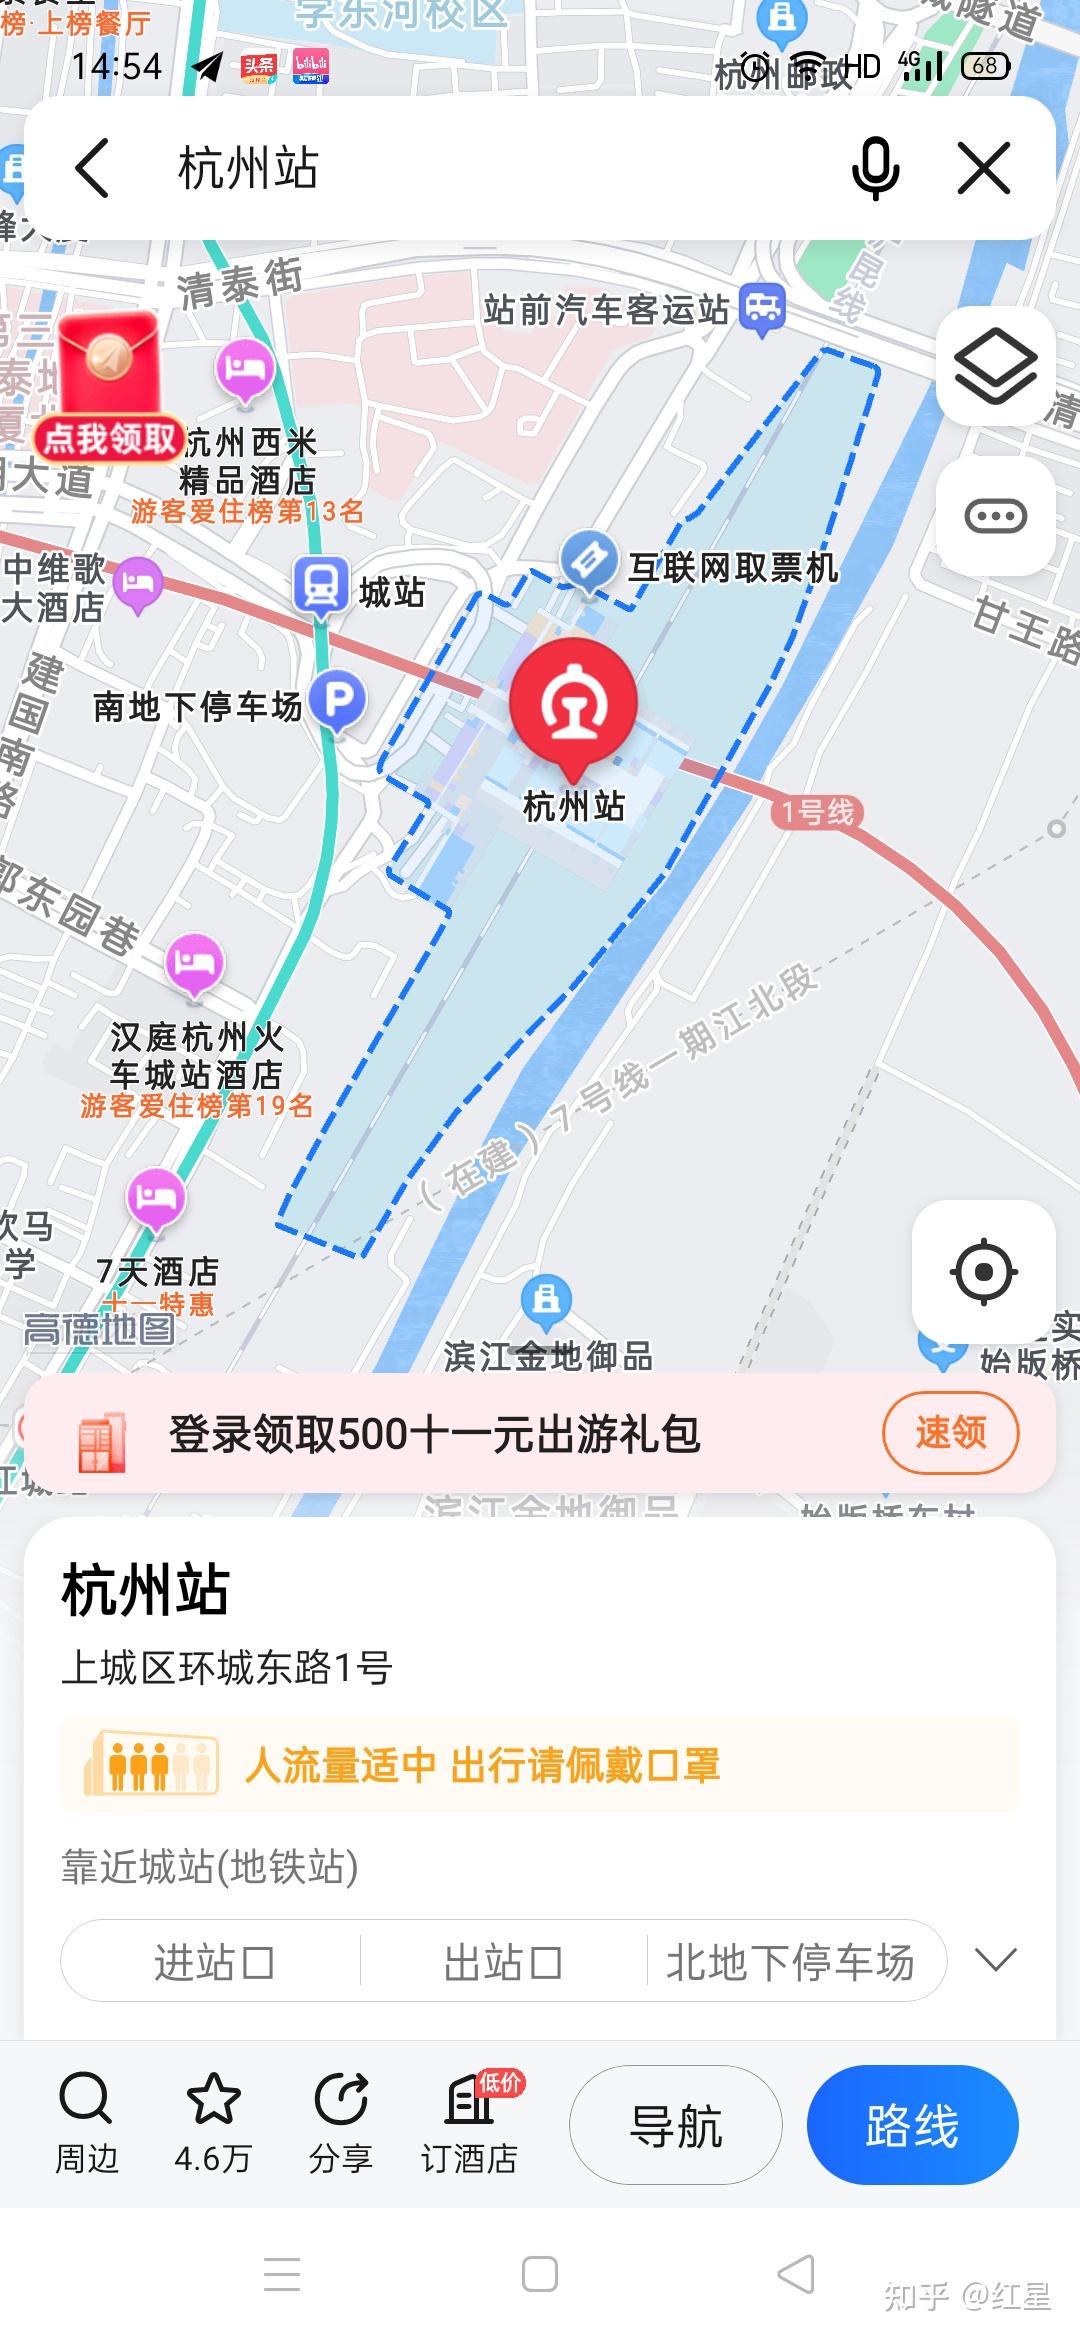 杭州火车站是哪个和城站是一个吗导航的话导城站还是杭州火车站